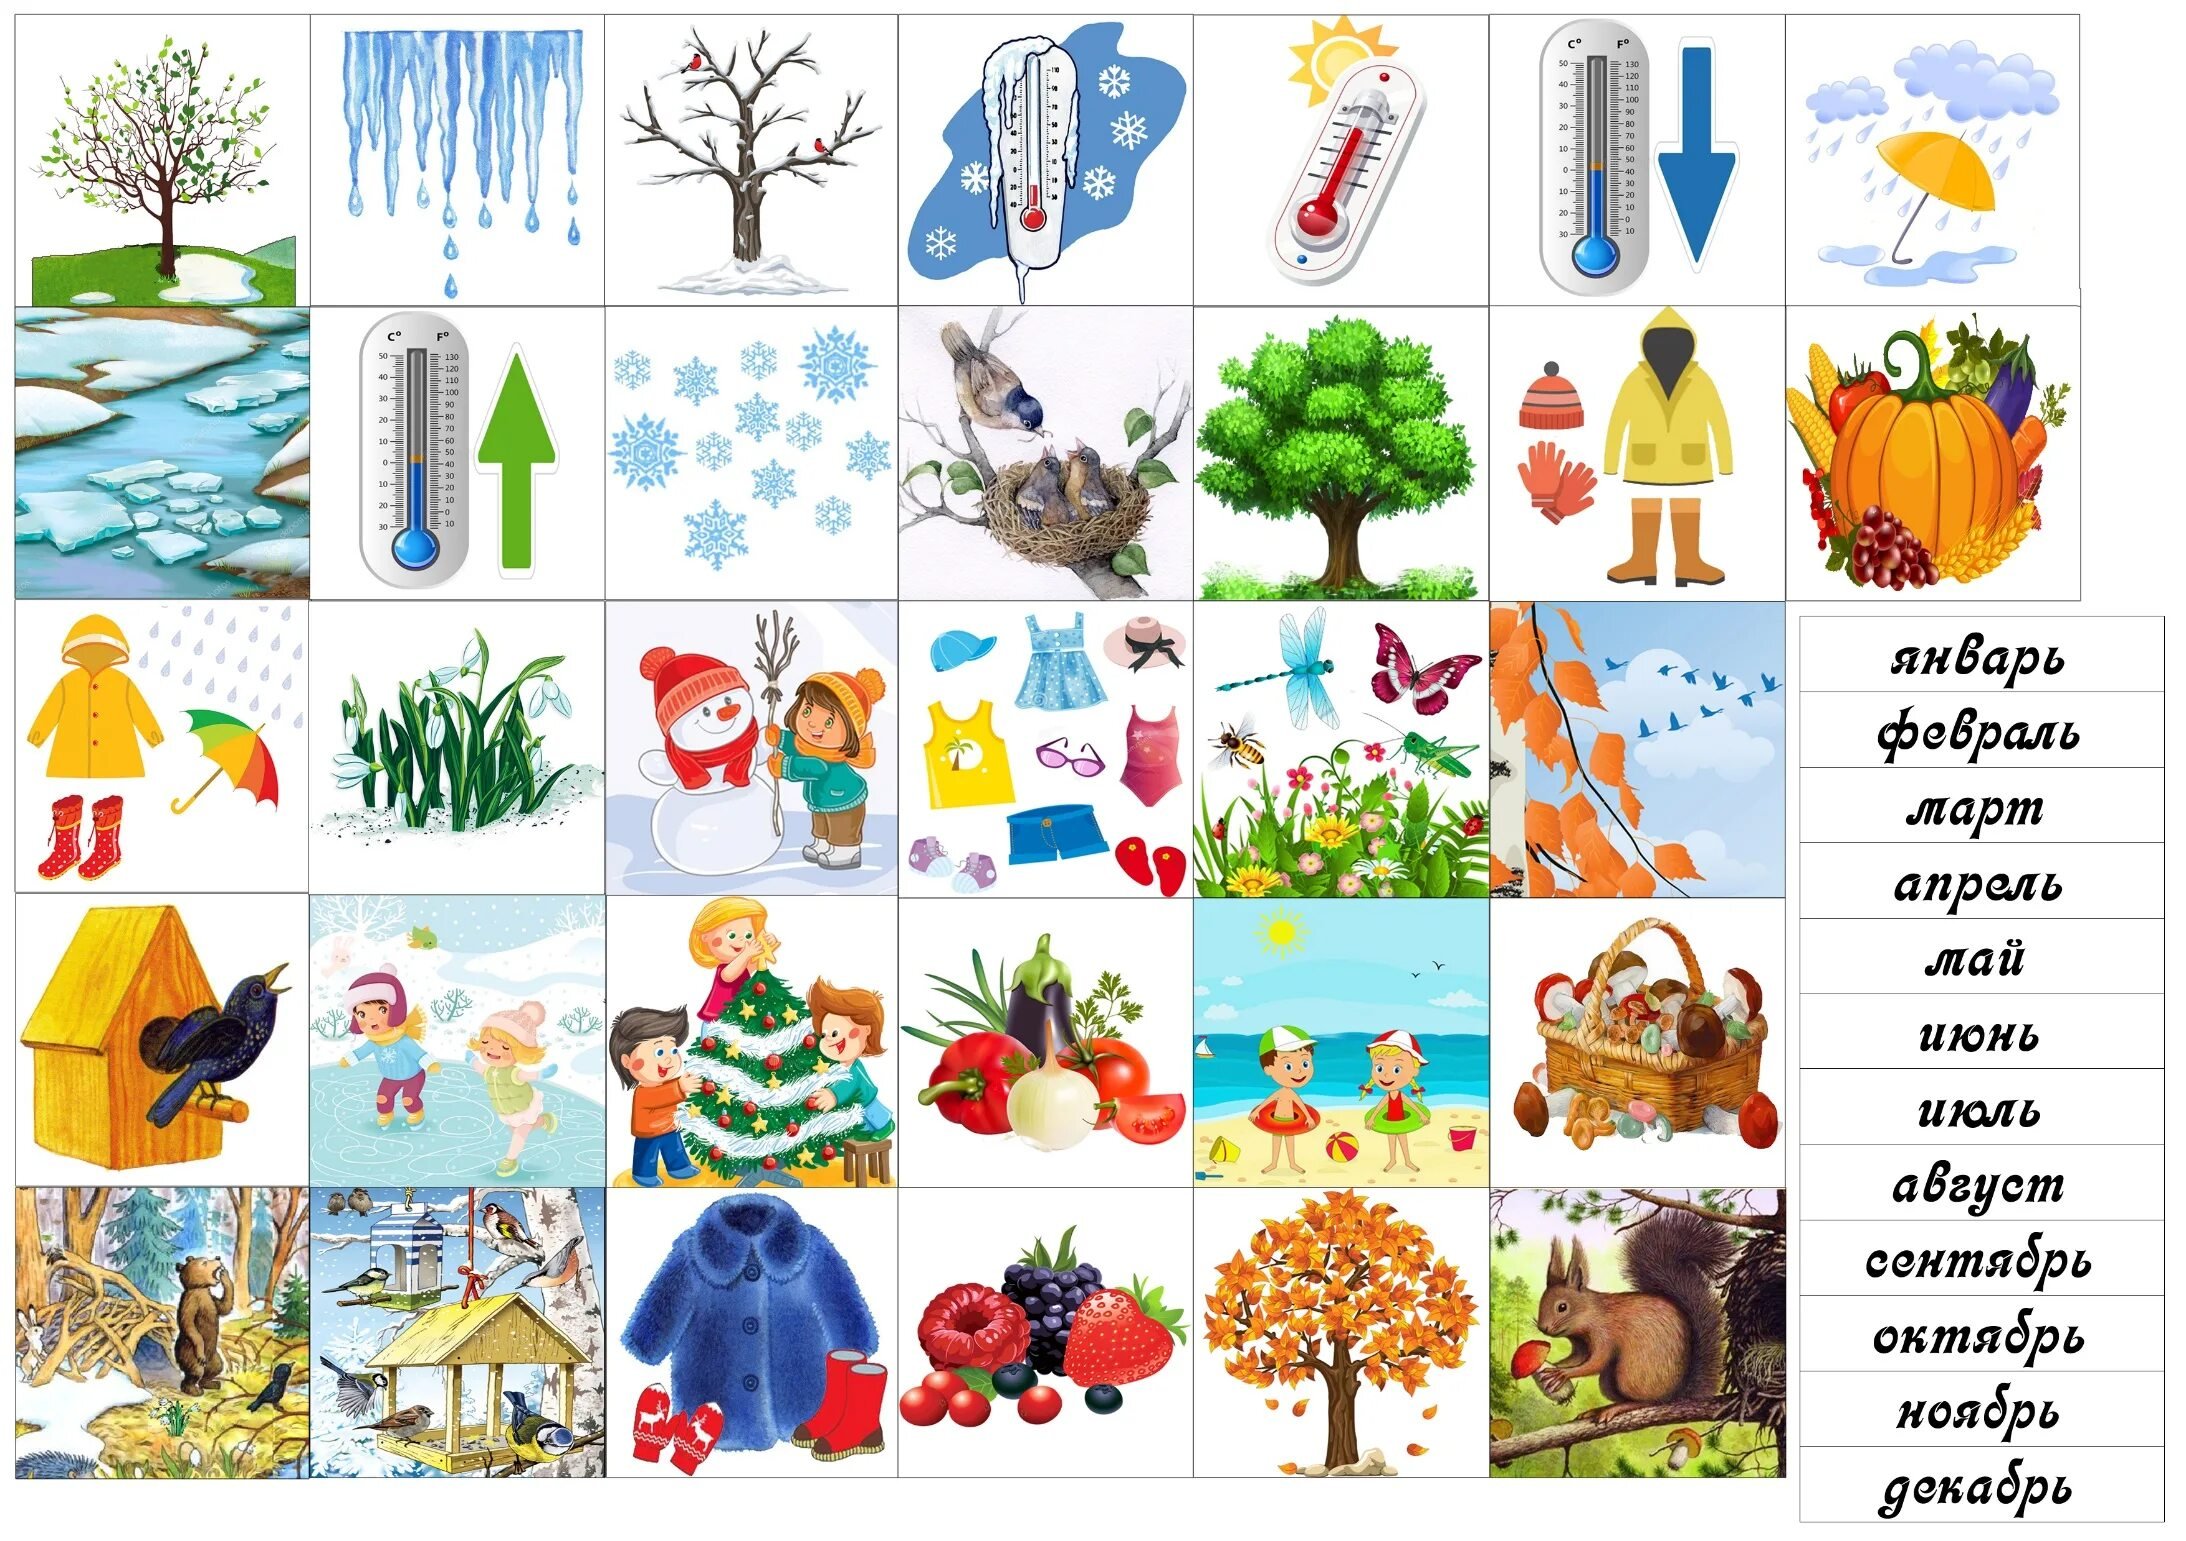 Угадай месяцы. Предметы времен года. Карточки по временам года. Признаки времен года для детей. Изображения времен года для детей.